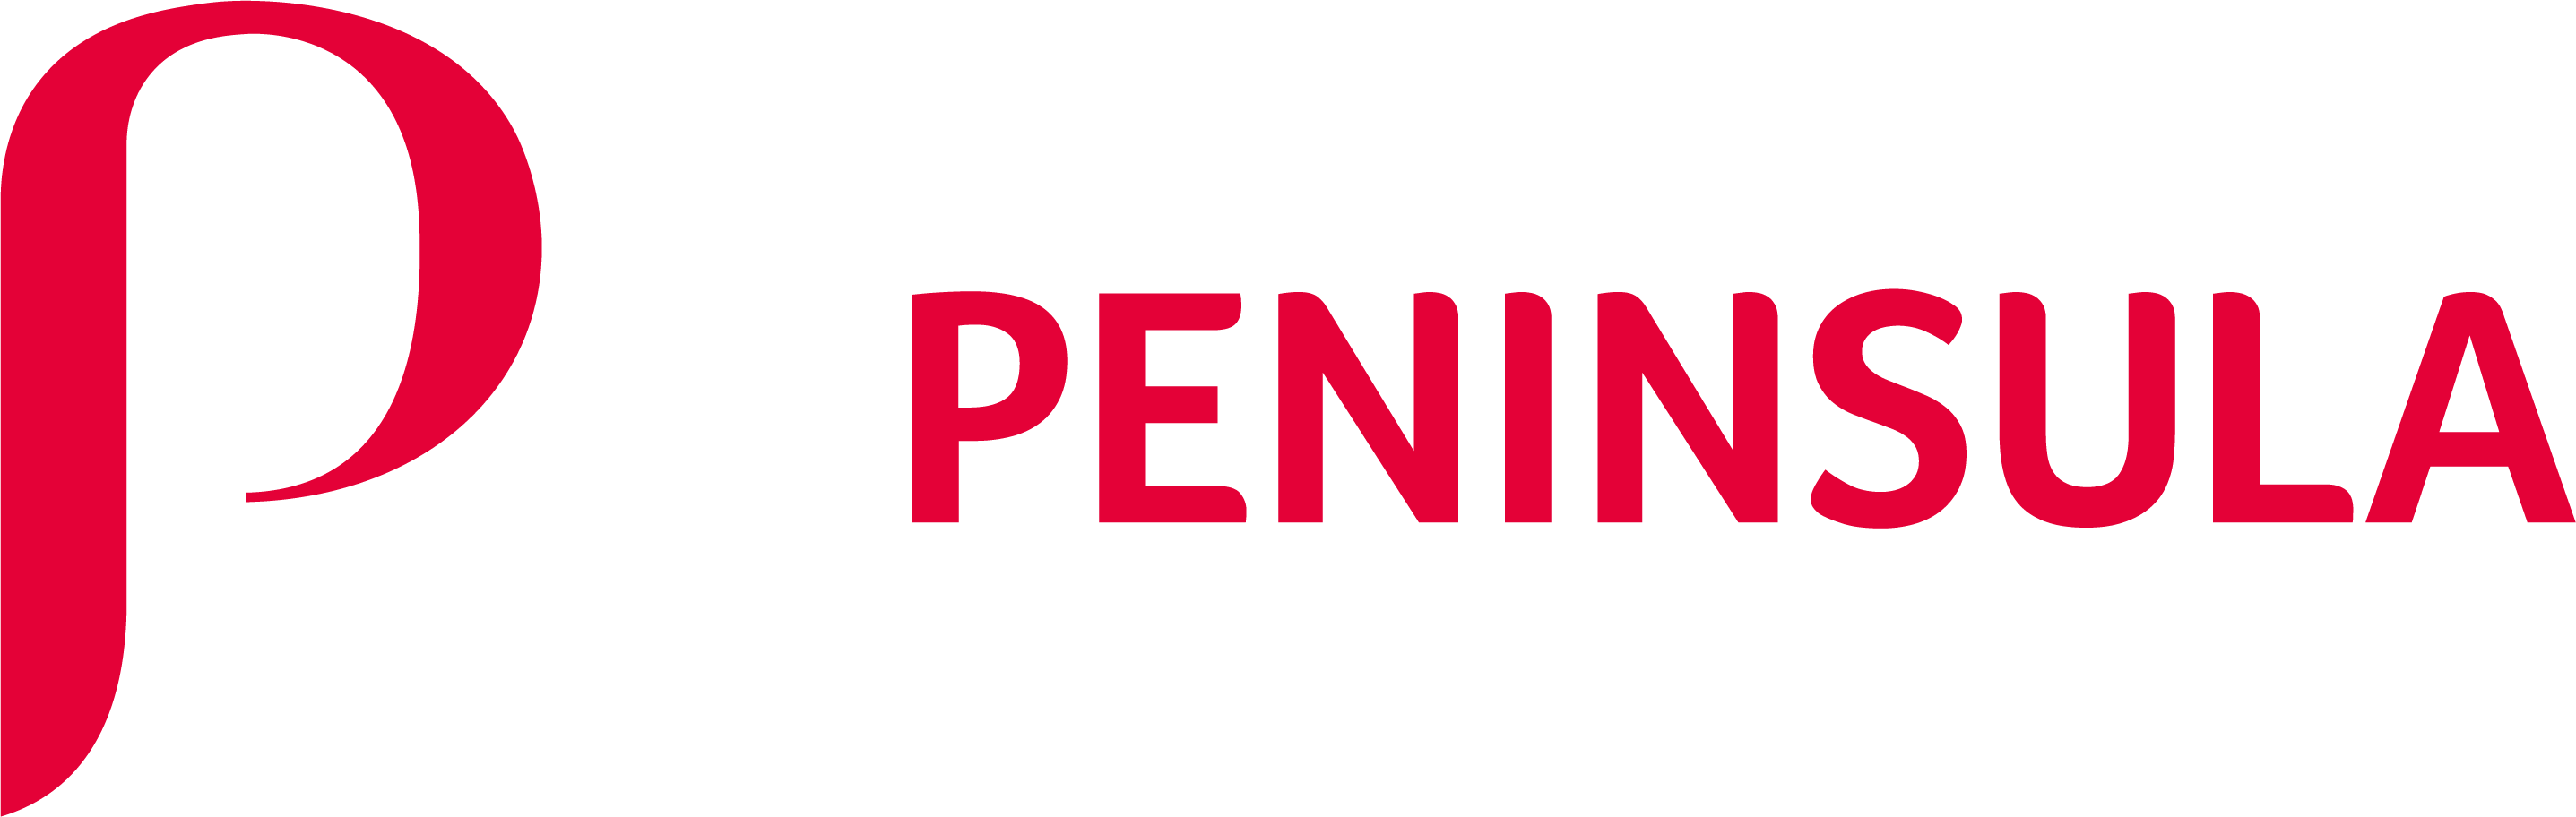 Peninsula - Red - Logo (horizontal) (1).png